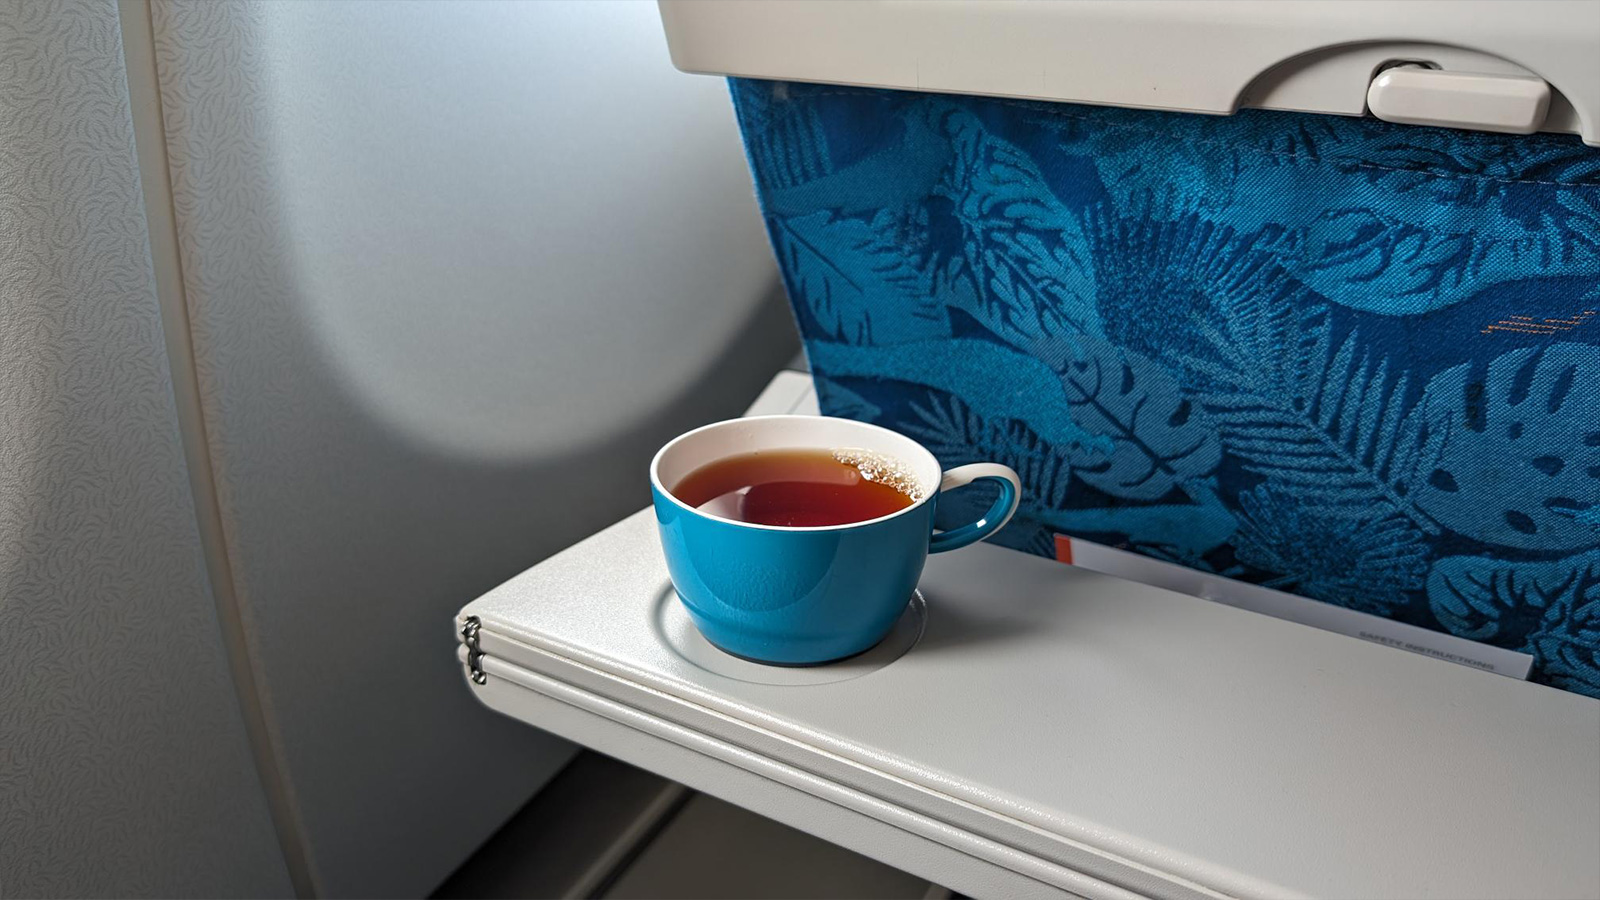 Ceylon tea on SriLankan Airlines